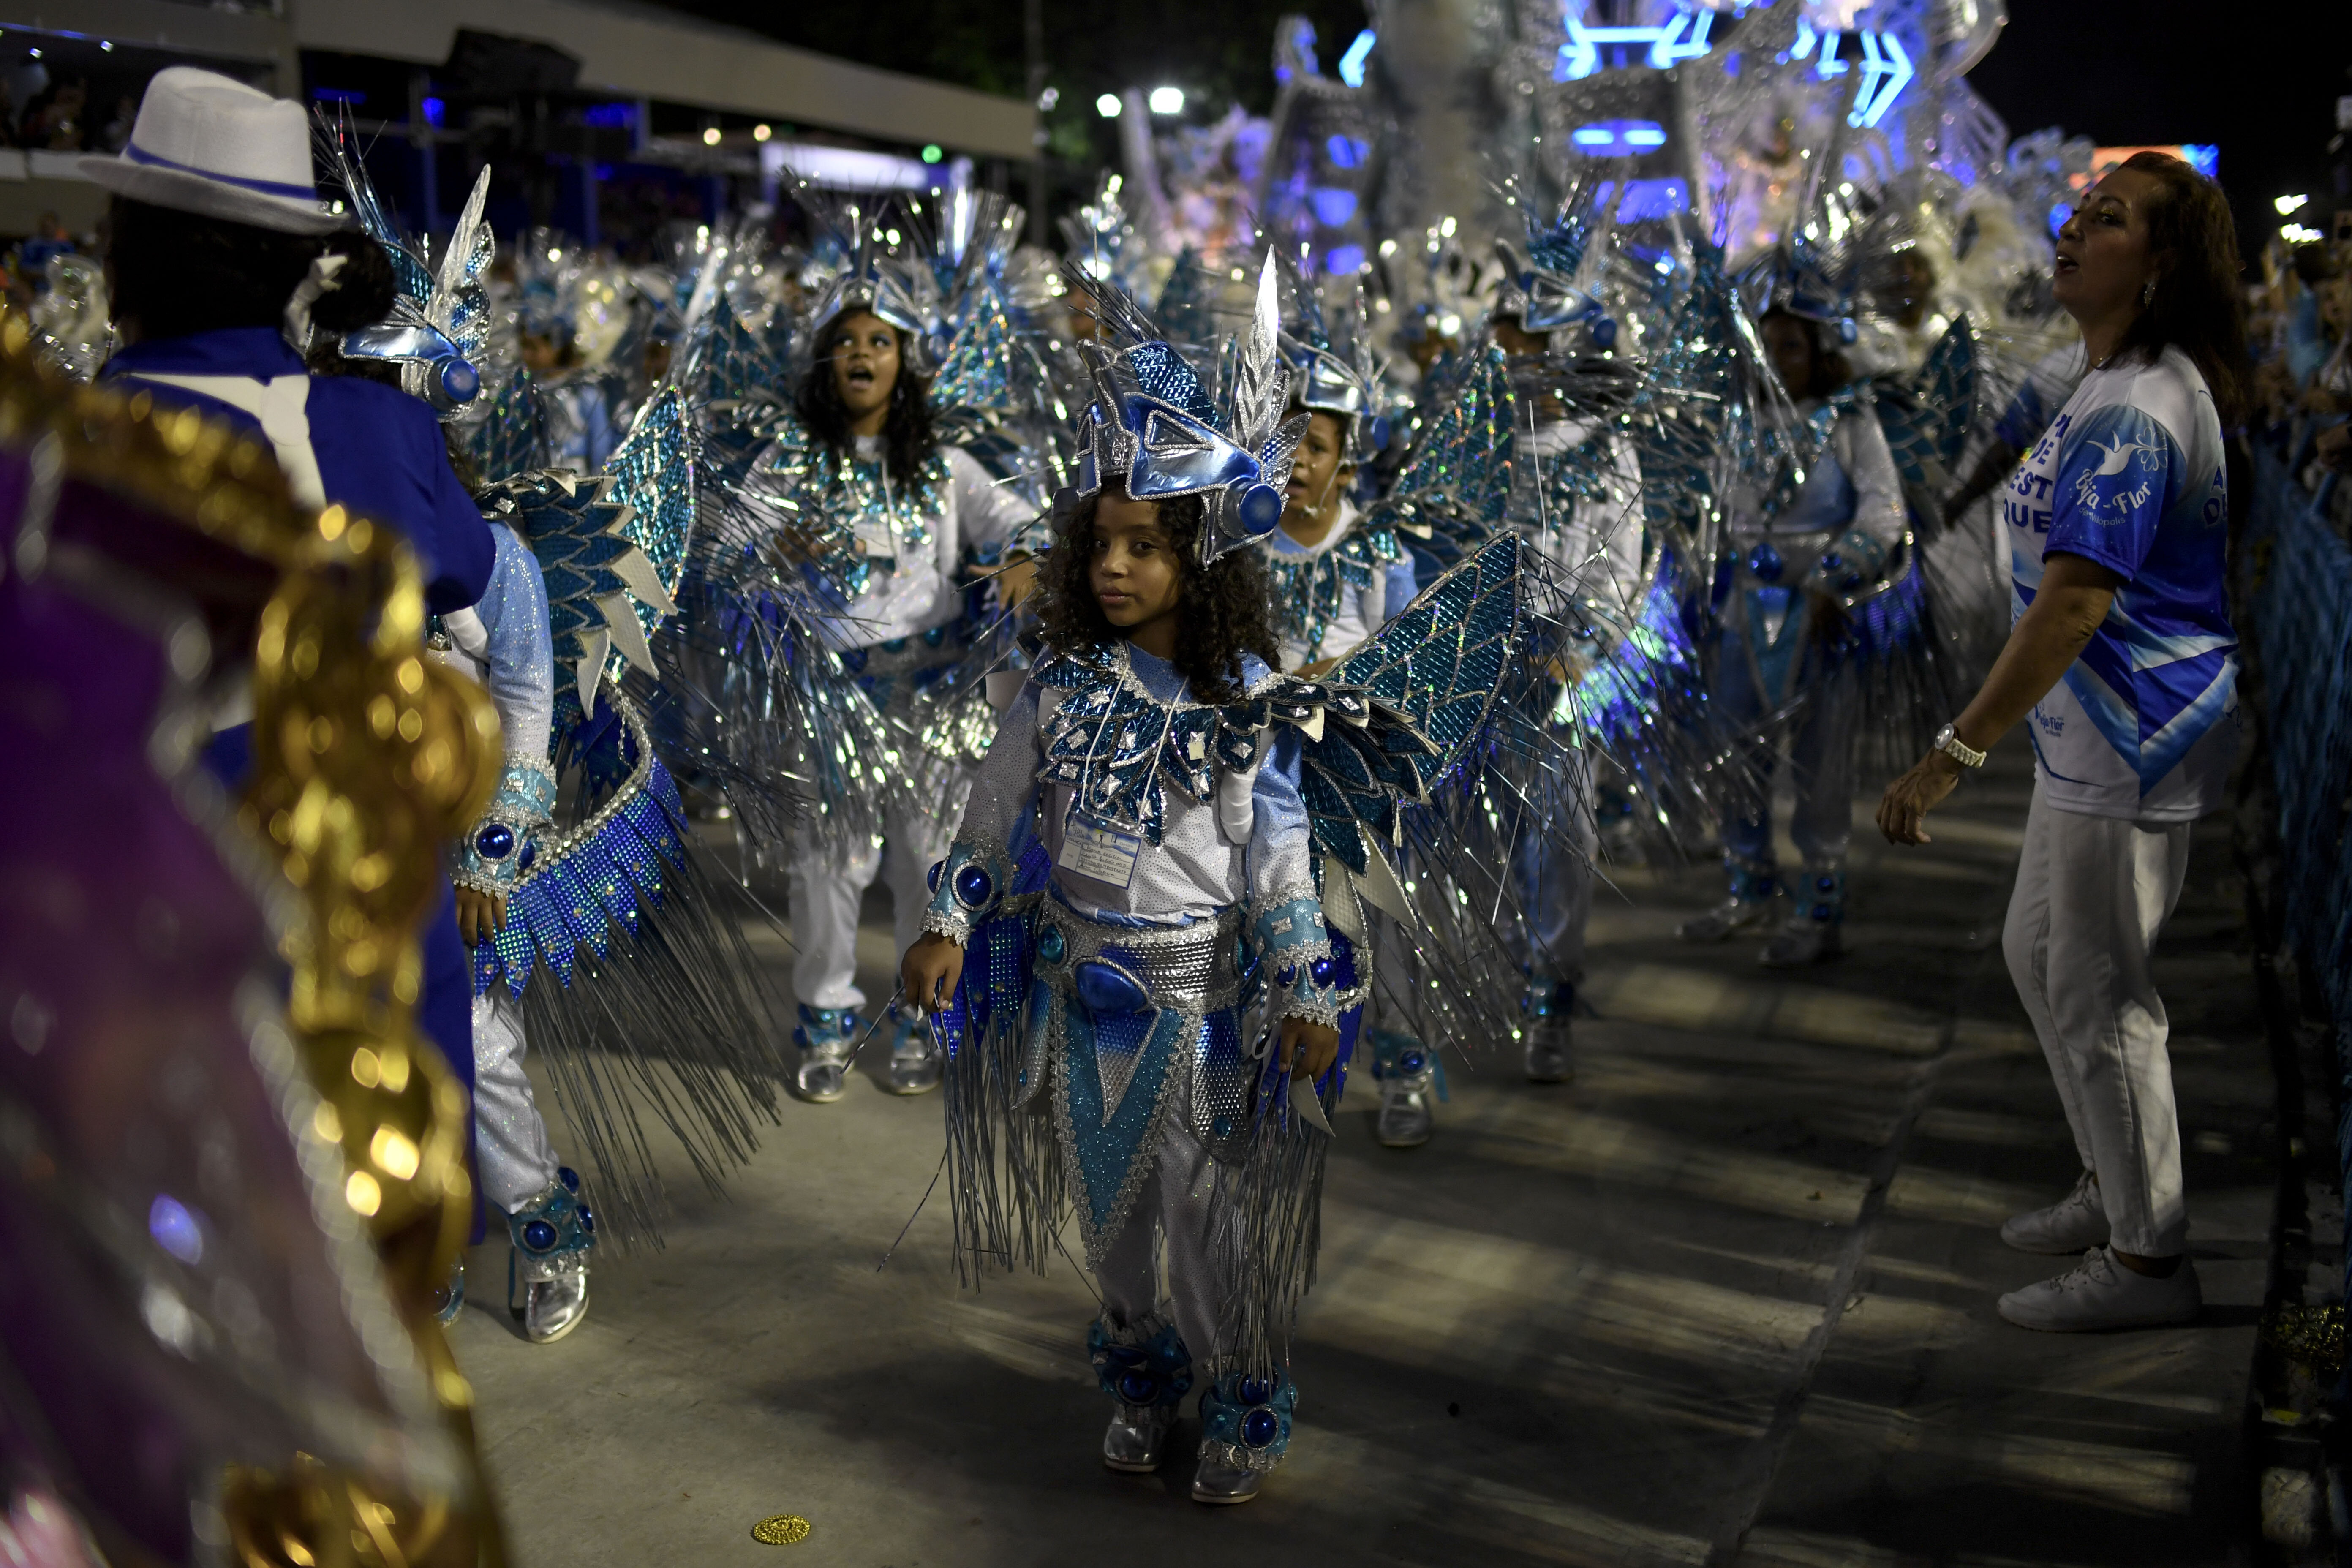 À cause du Covid-19, Rio renonce à son Carnaval en 2021